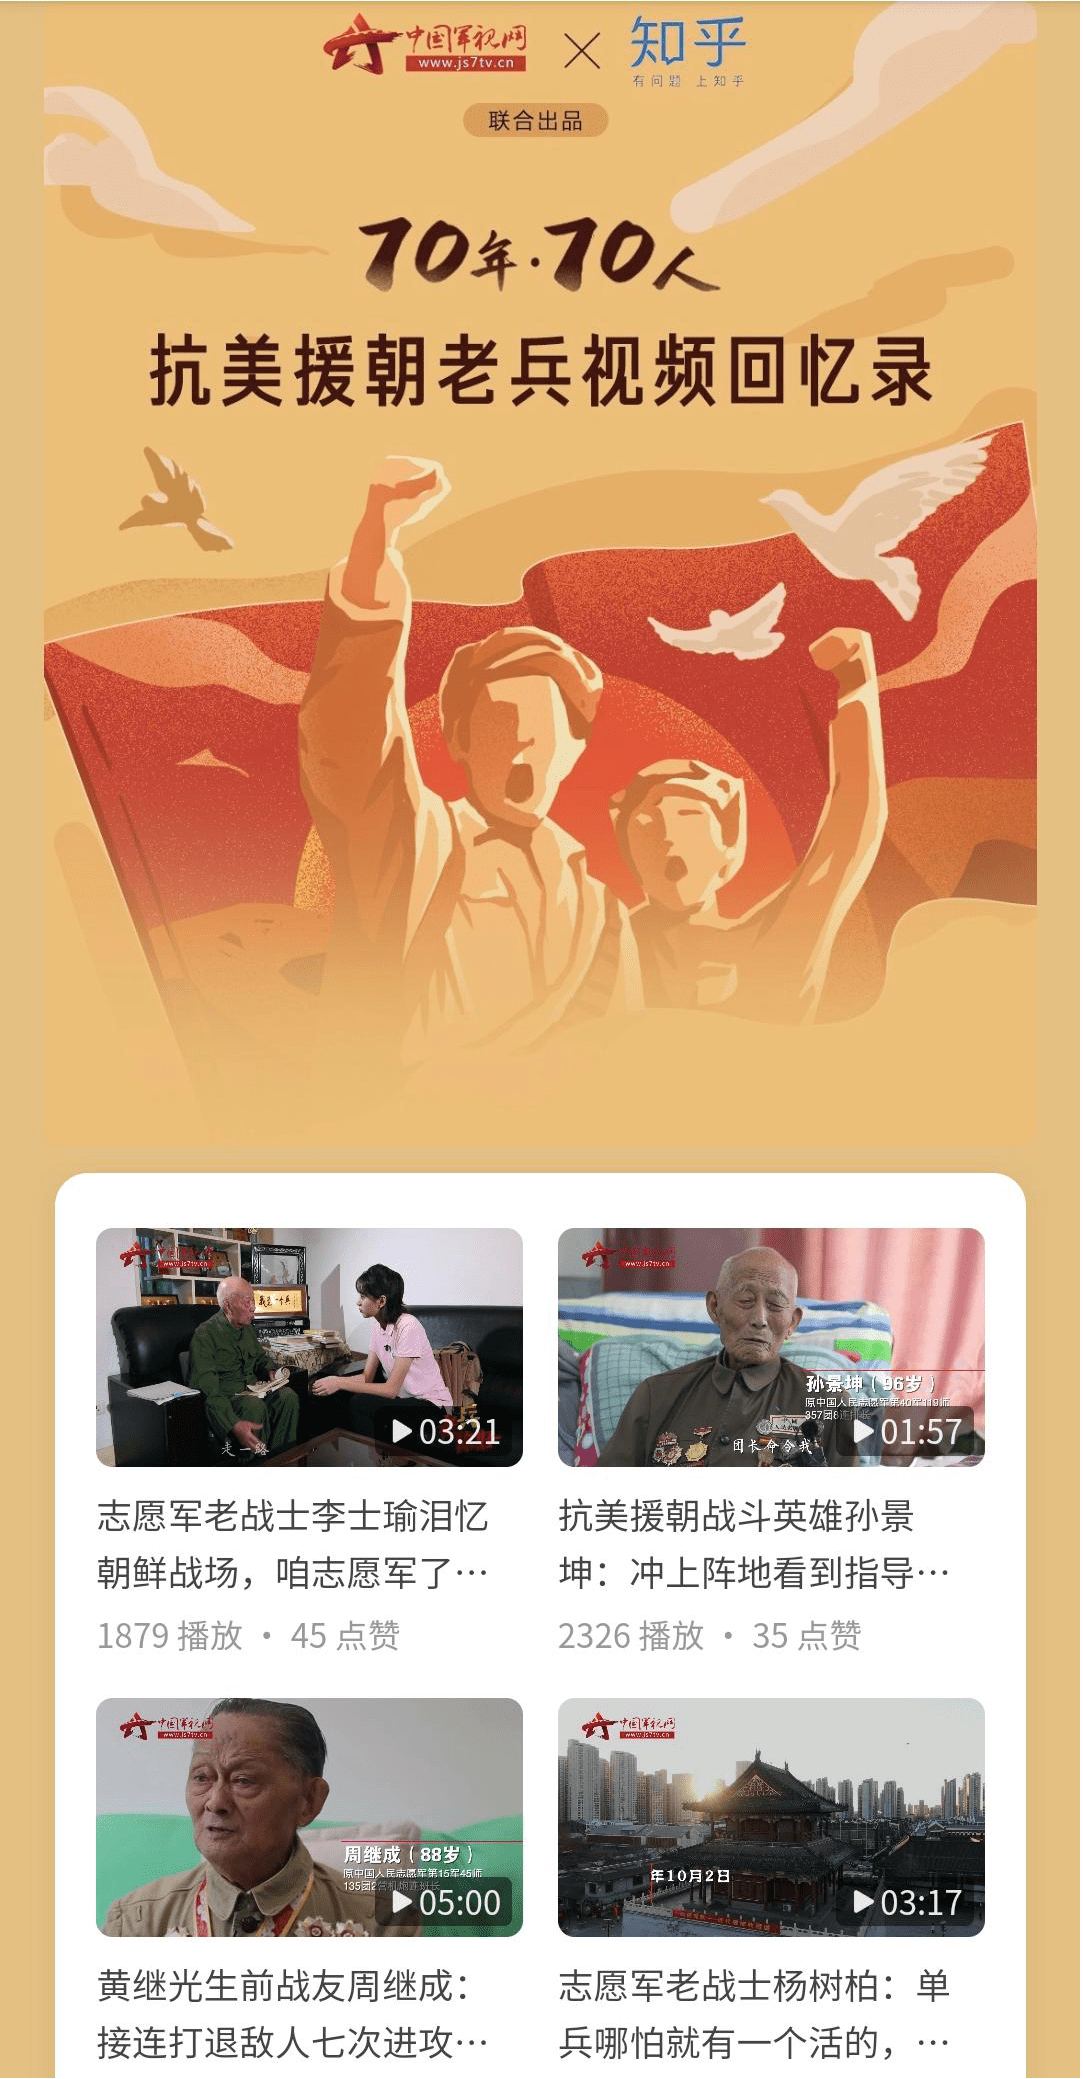 知乎联合中国军视网推出致敬老兵视频访谈专题